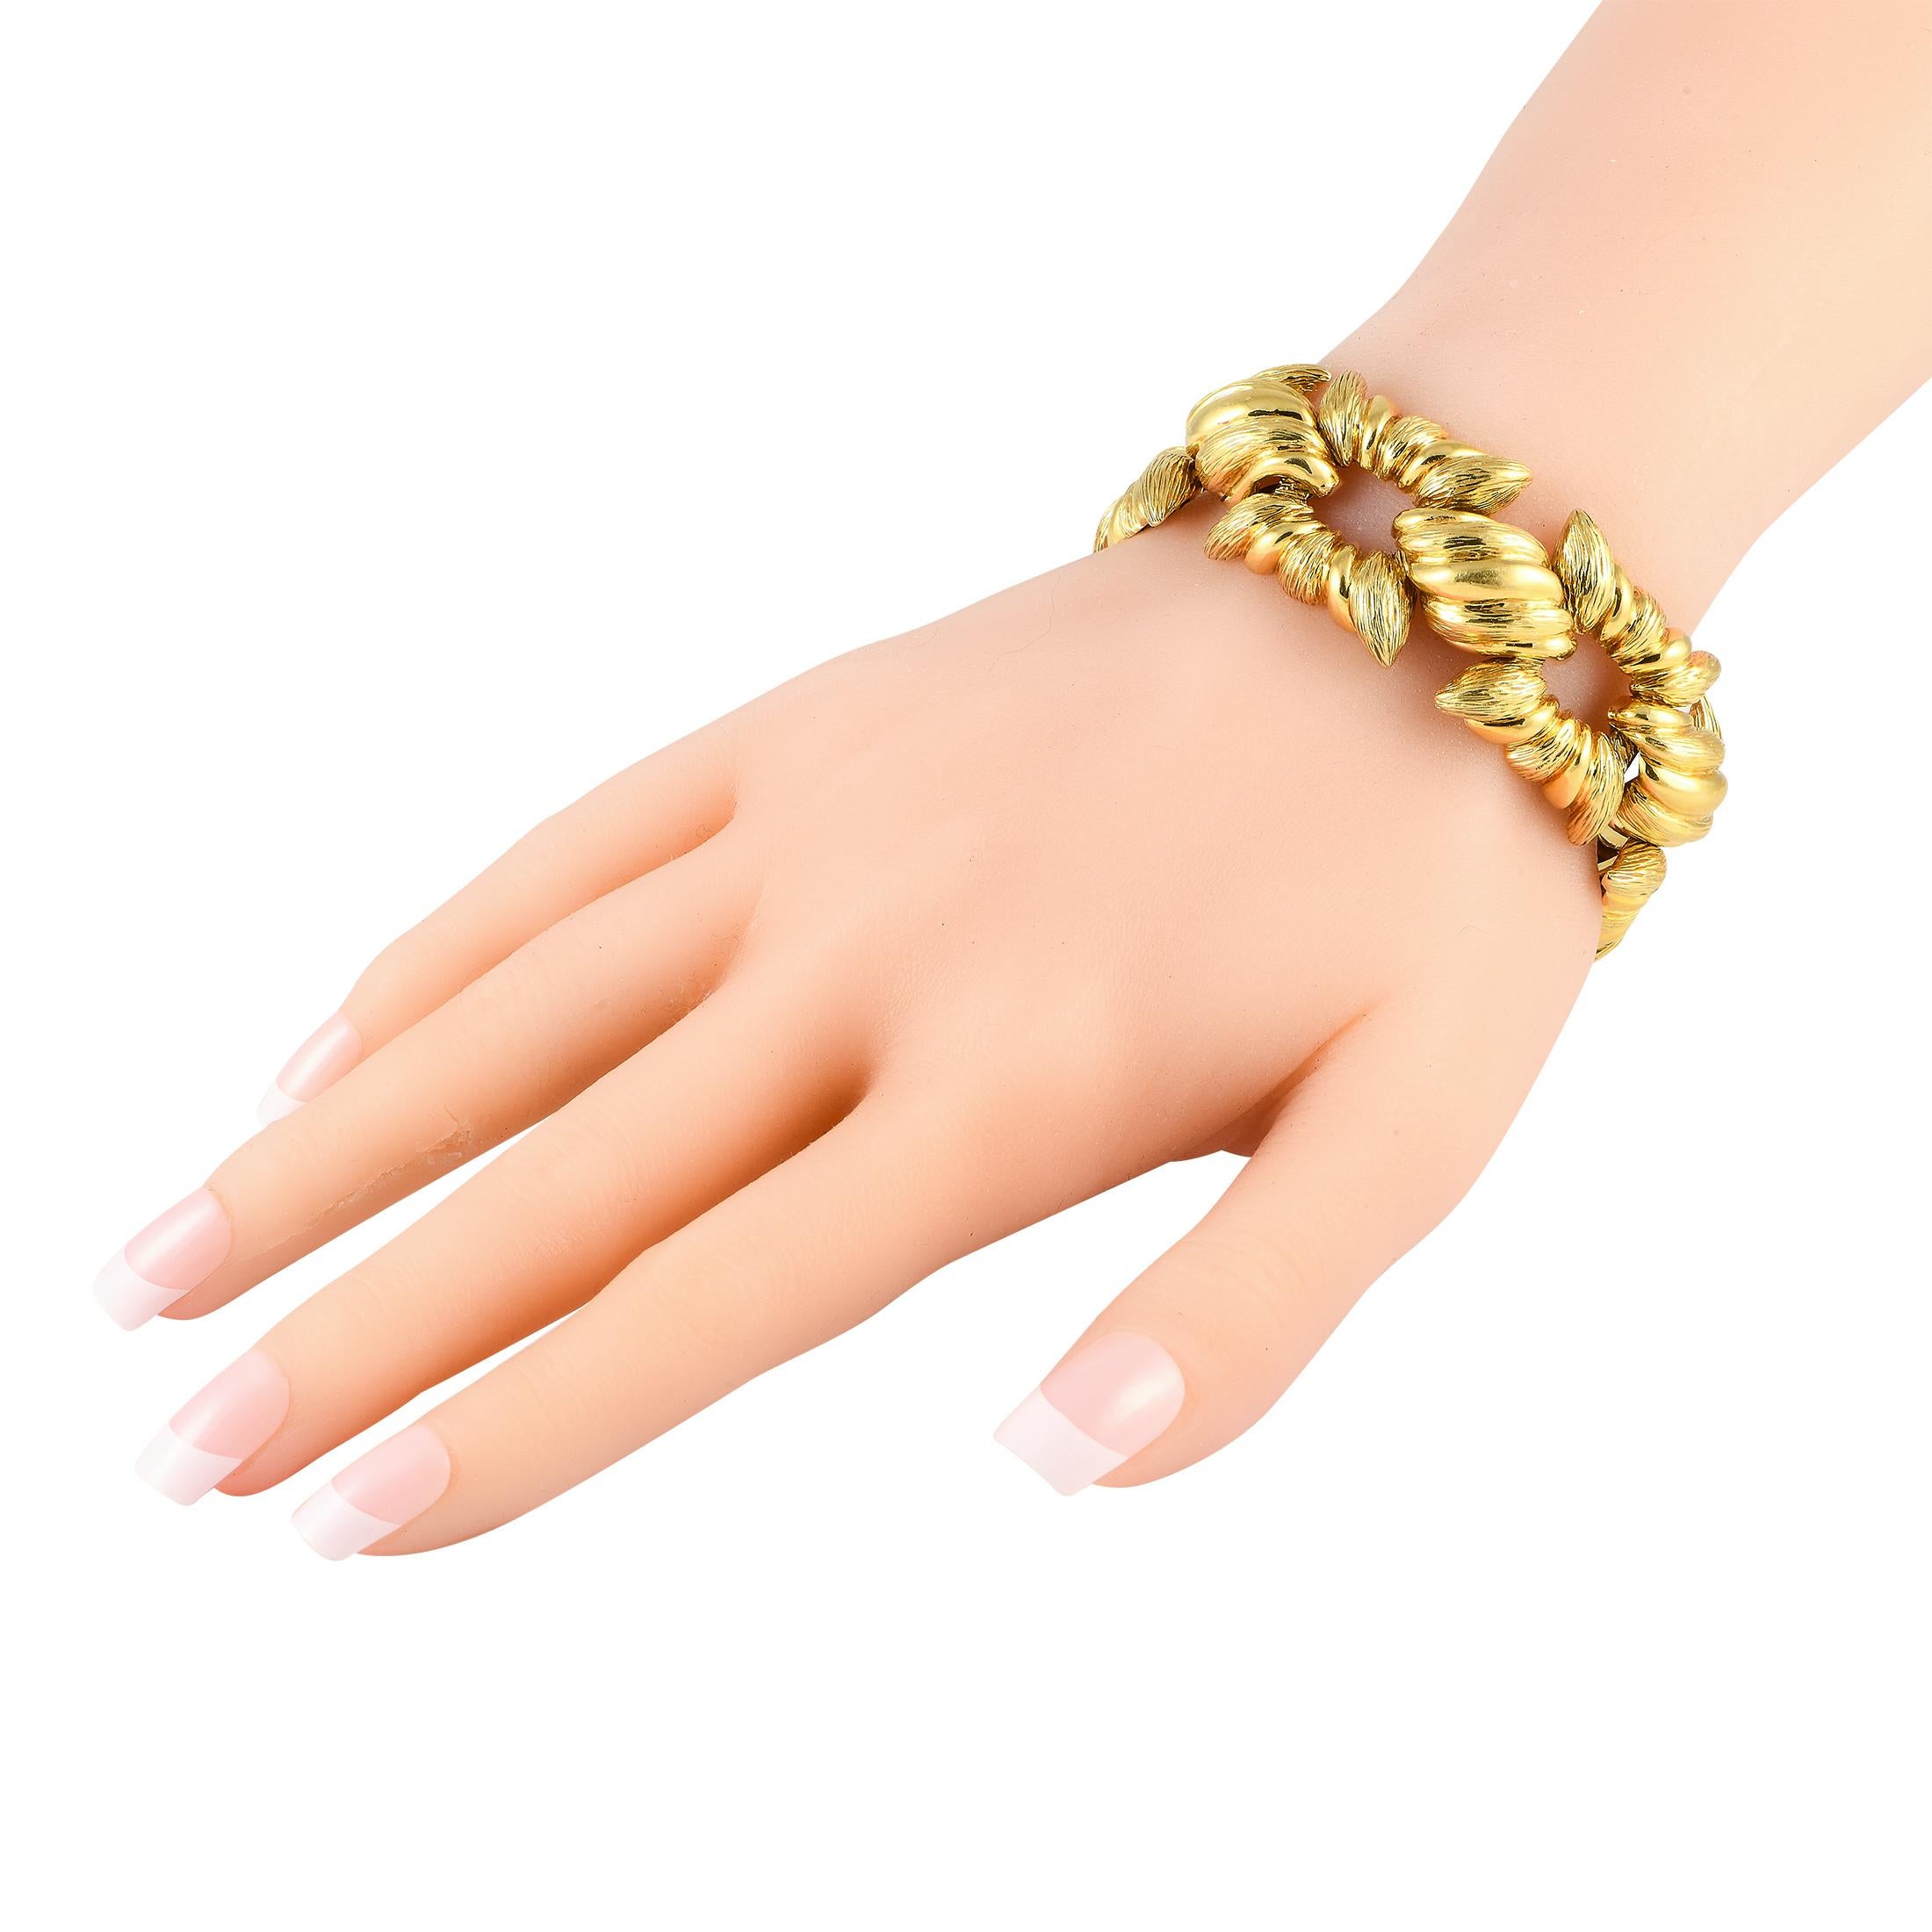 Betrachten Sie dieses Armband aus Gelbgold als ein einfach zu tragendes Statement-Stück, das Ihrem Accessoire-Stil im Handumdrehen Dimension und Textur verleiht. Das Armband besteht aus starren und geriffelten quadratischen Gliedern, die durch